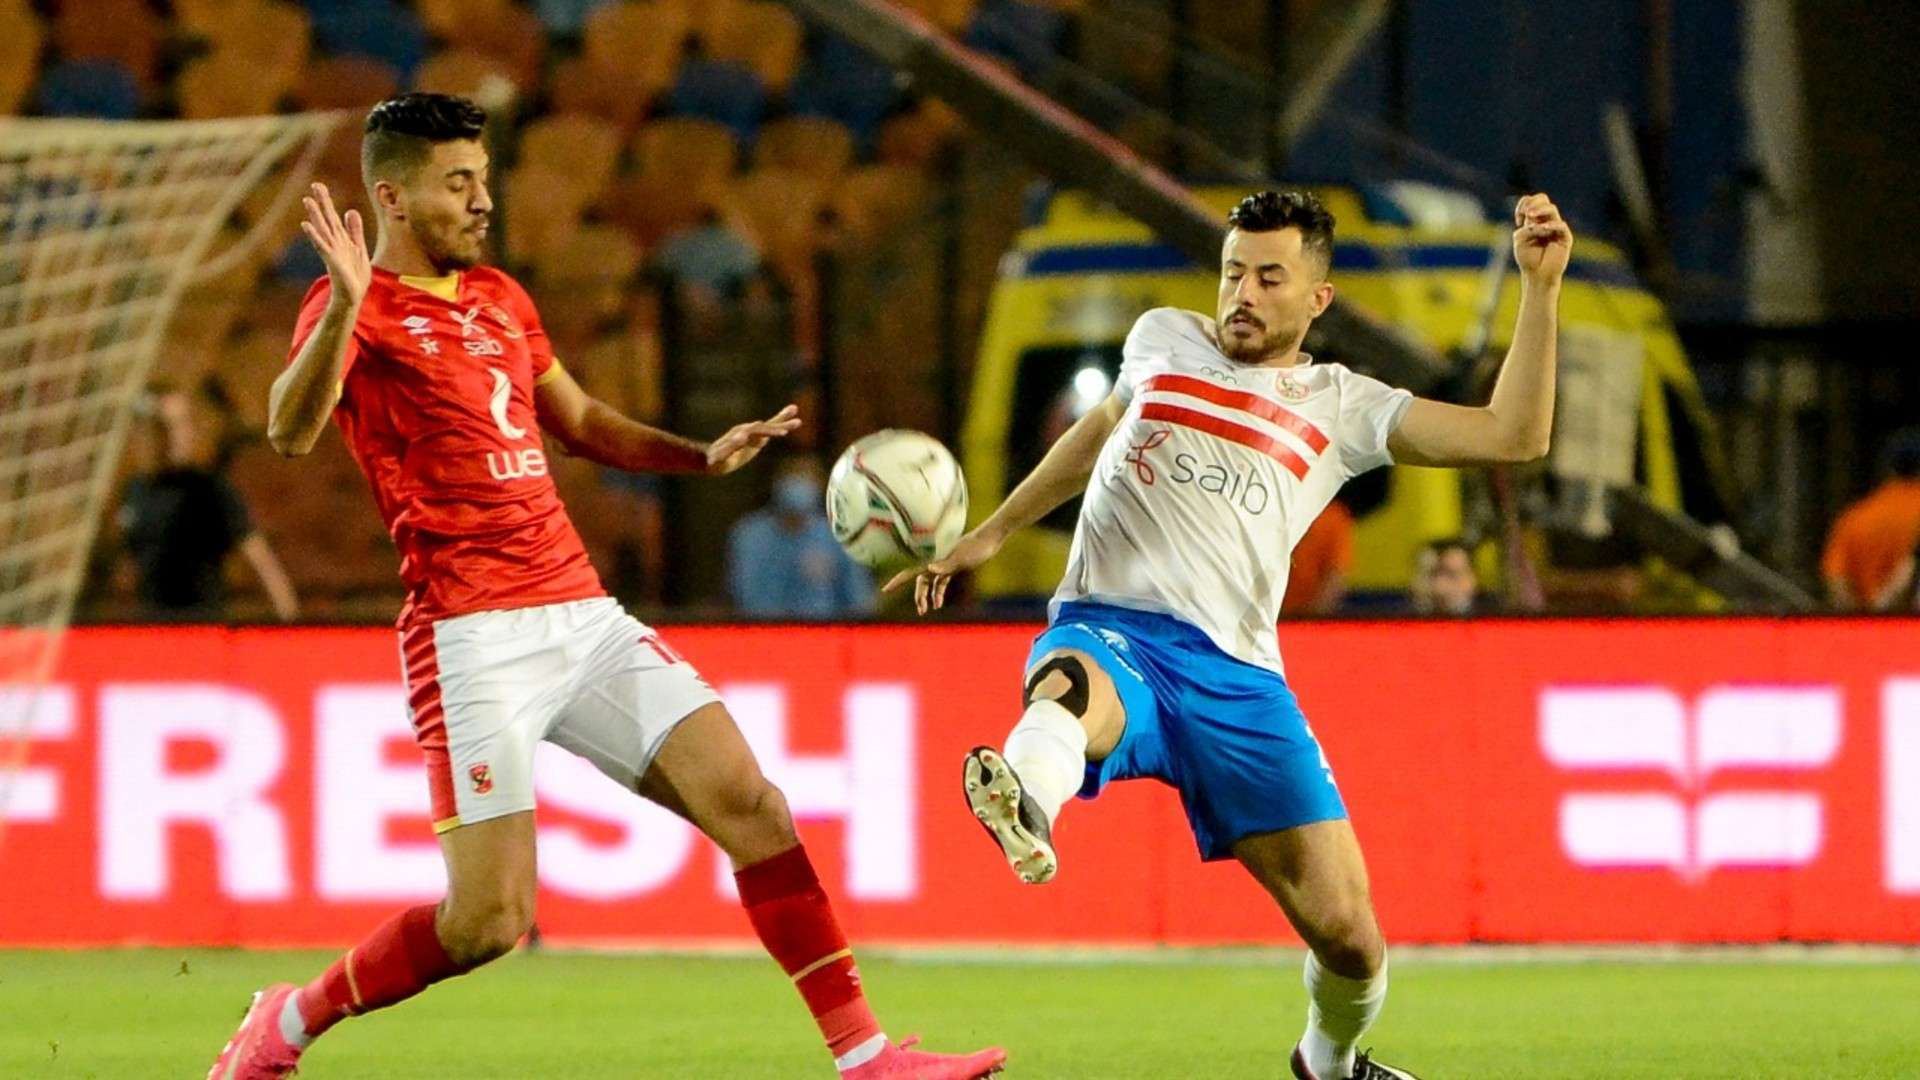 المافيا في كرة القدم المصرية.. سيطرة الفساد والتلاعب بالنتائج على حساب النزاهة والعدالة الرياضية 